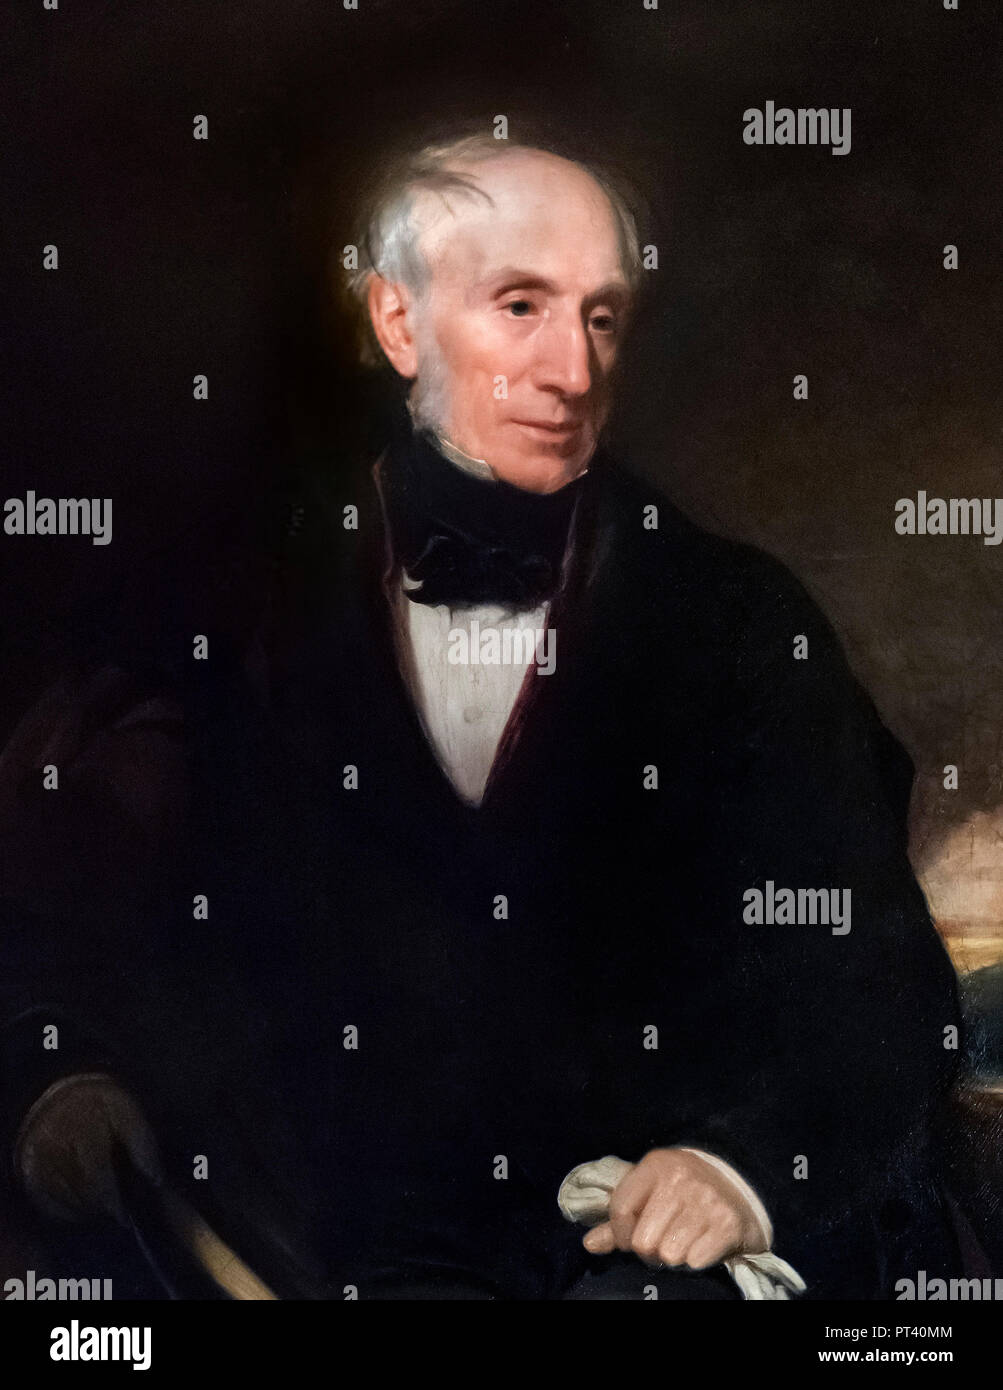 William Wordsworth (1770-1850) par Henry William Pickersgill, huile sur toile, c.1840. Banque D'Images